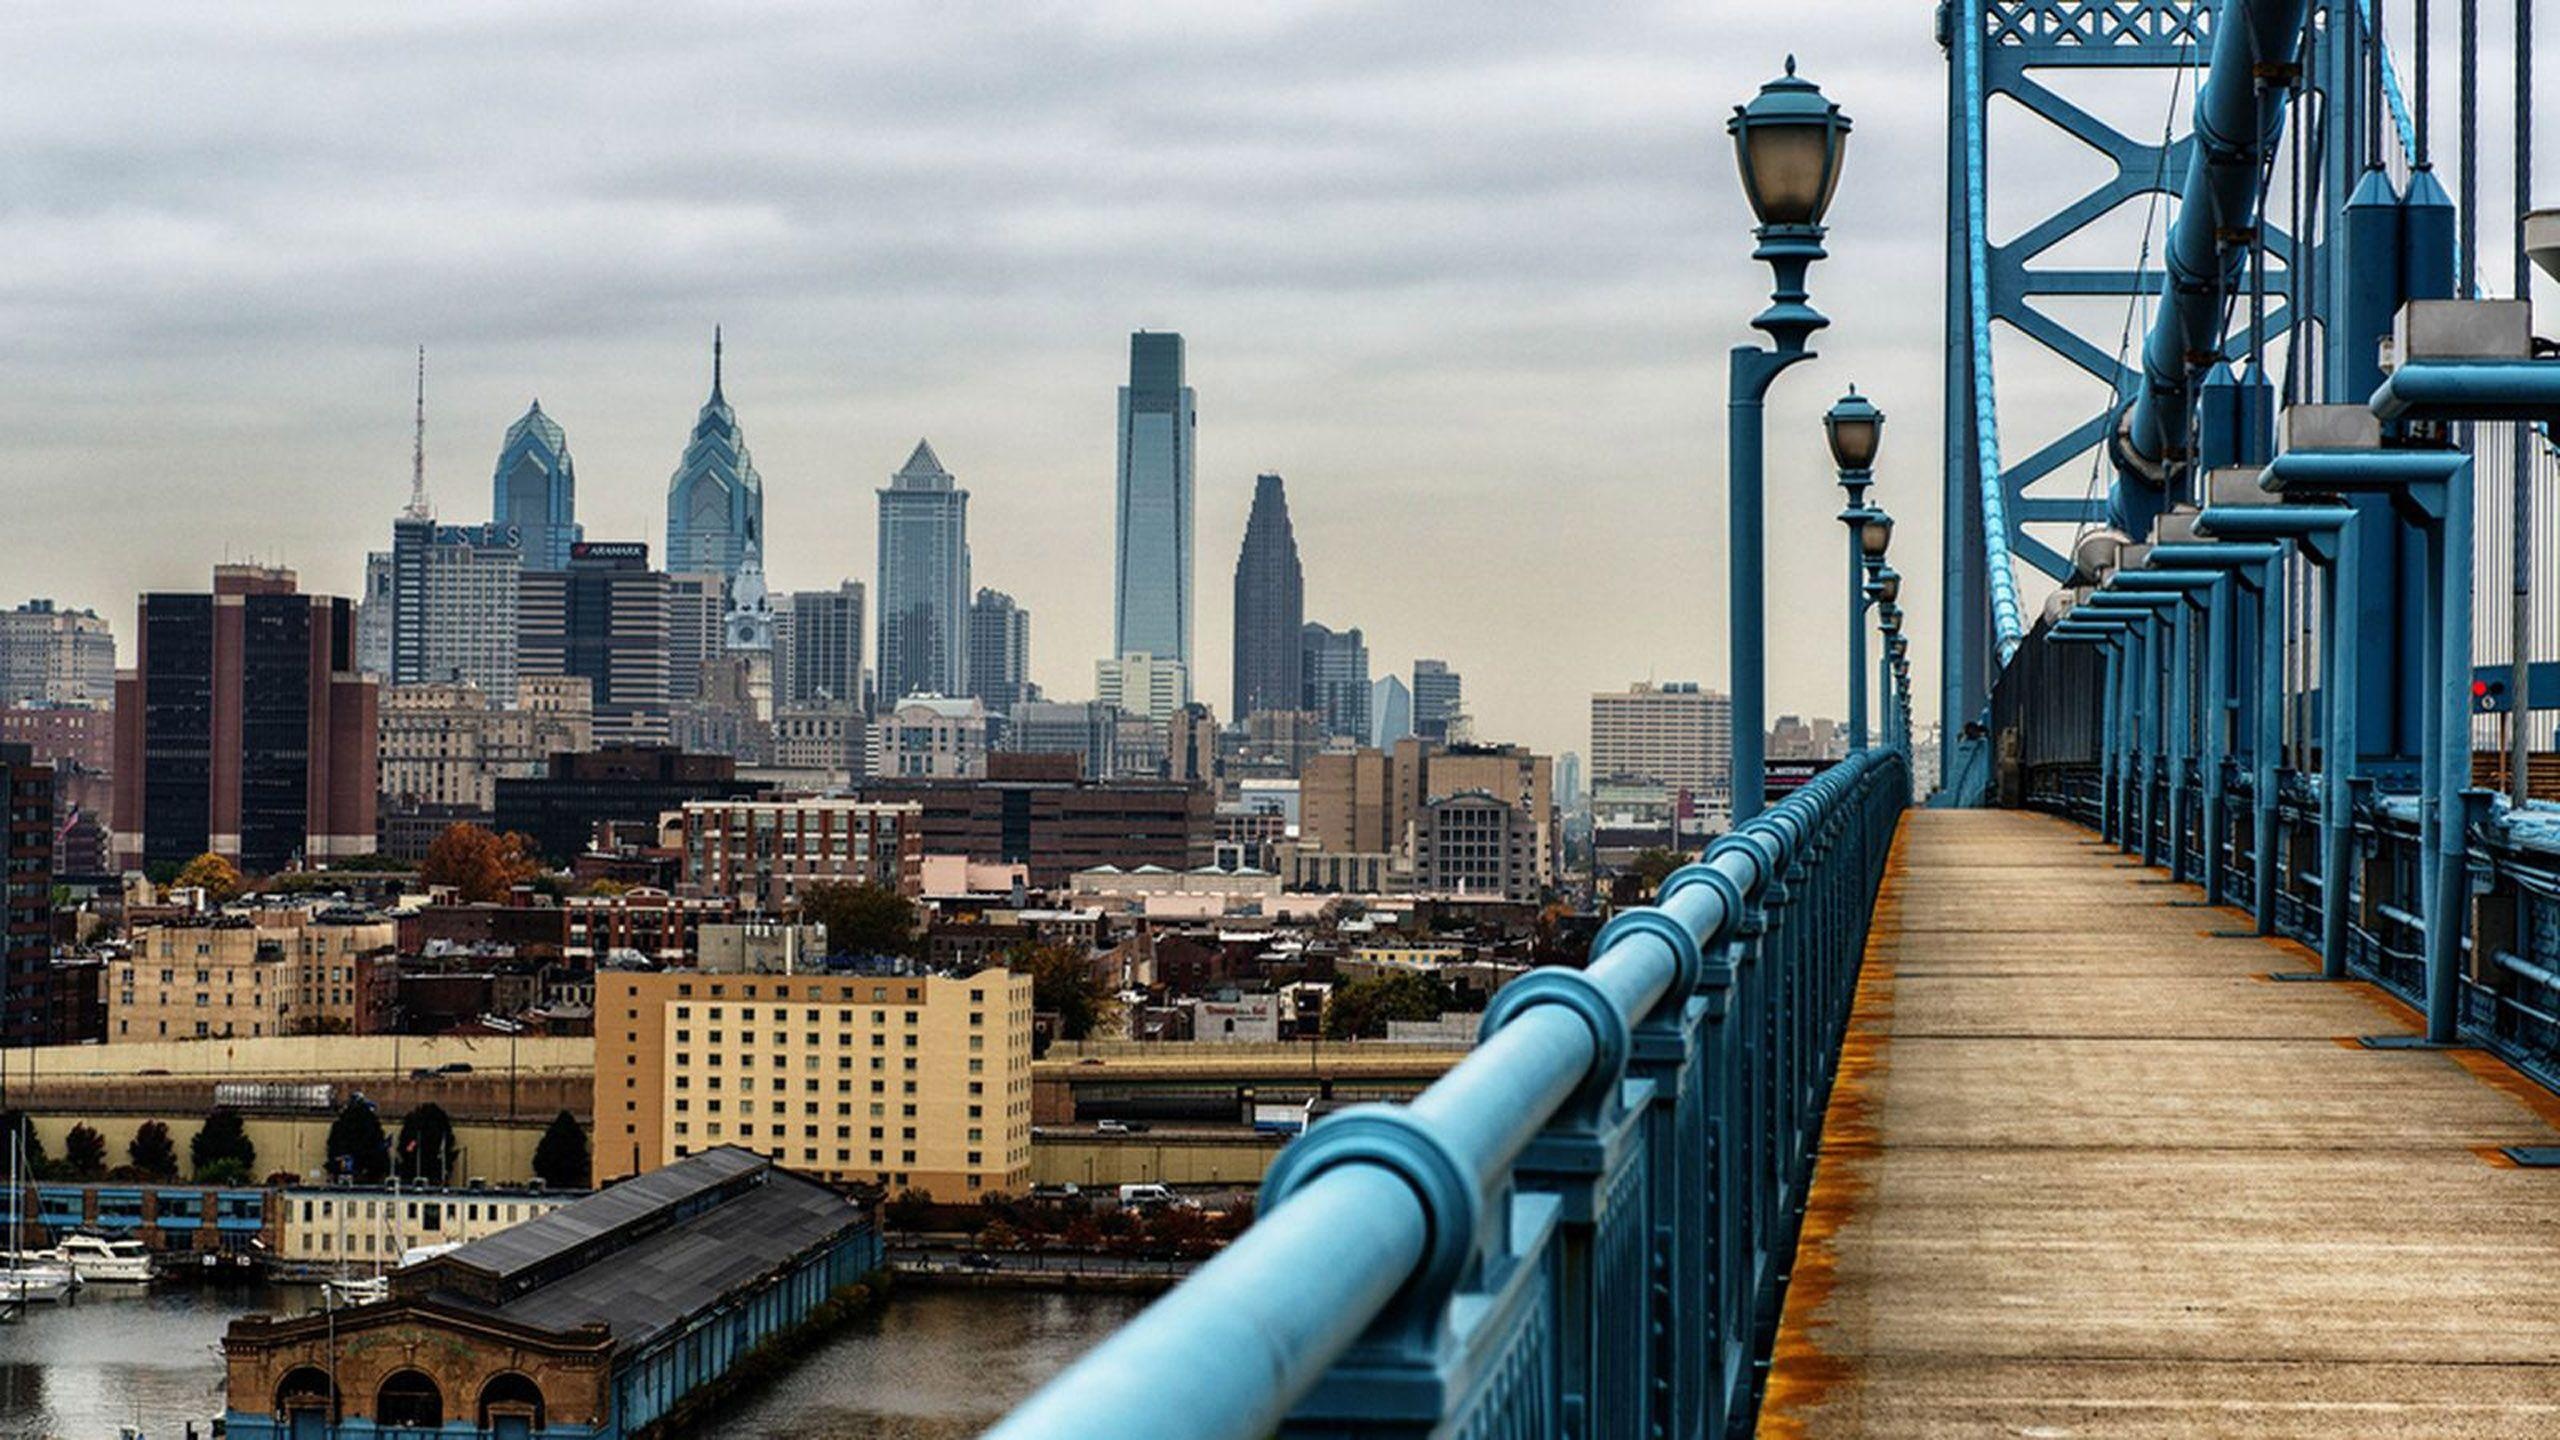 Philadelphia Skyline, HD wallpapers, Cityscapes, Beautiful city, 2560x1440 HD Desktop